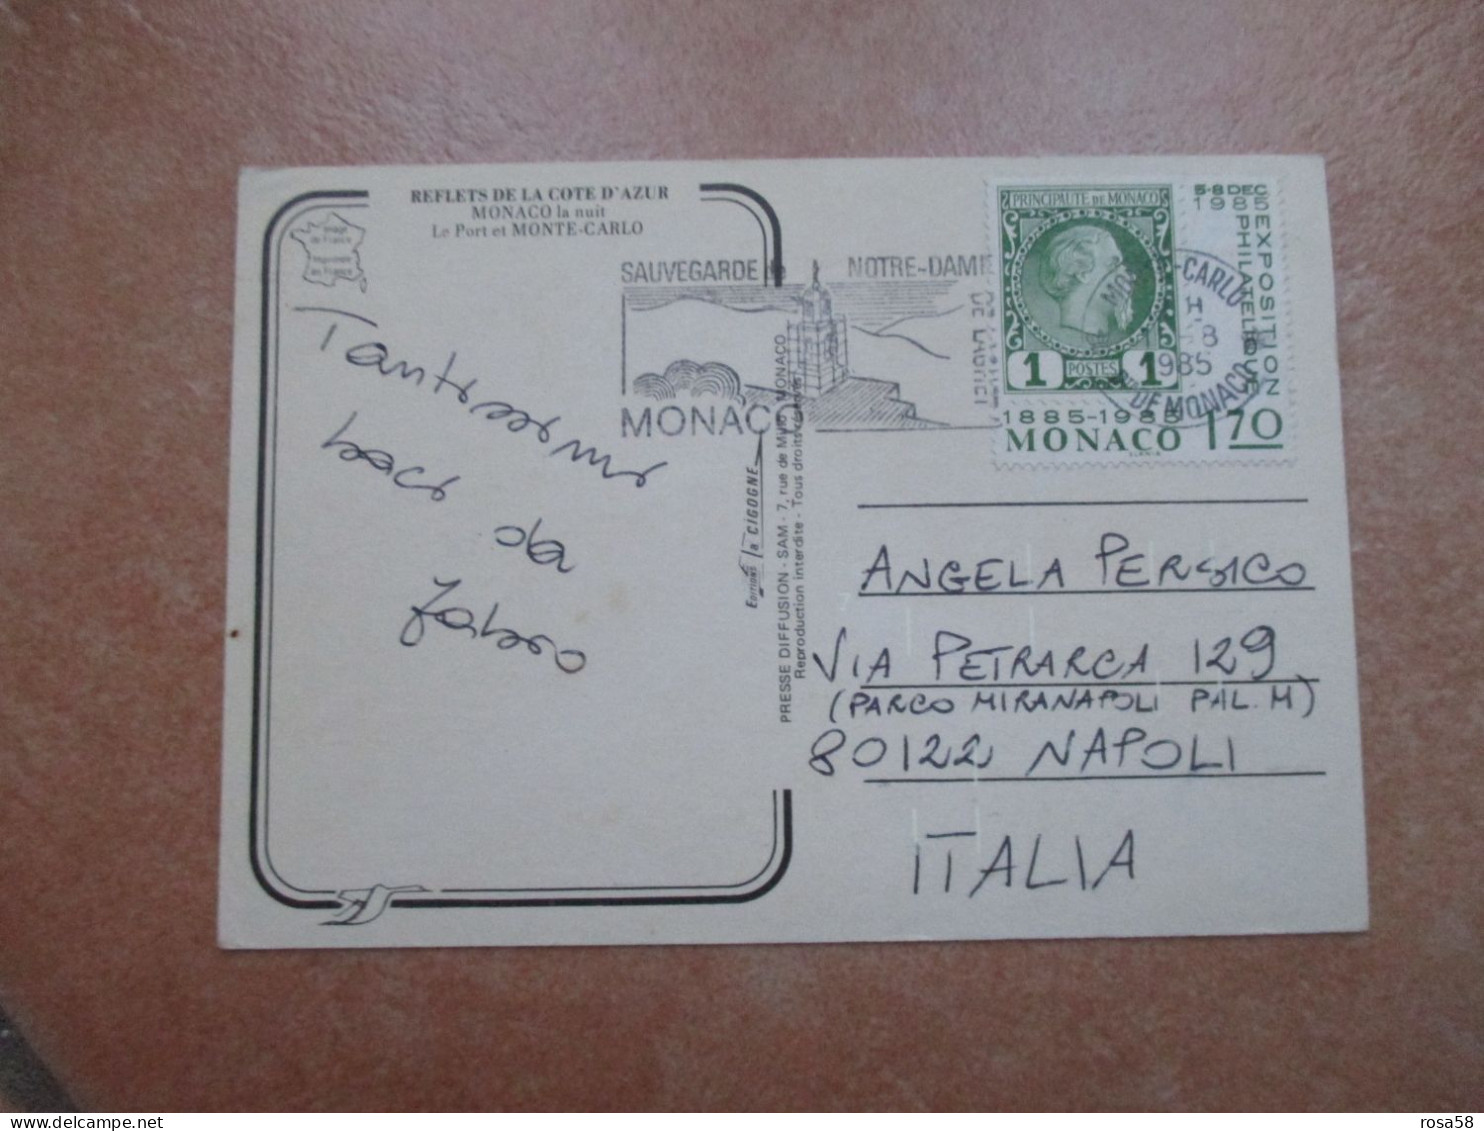 1985 Annullo Meccanico SAUVEGARDE Notre Dame Su F.bollo 1,70 1885 1985 - Cartas & Documentos